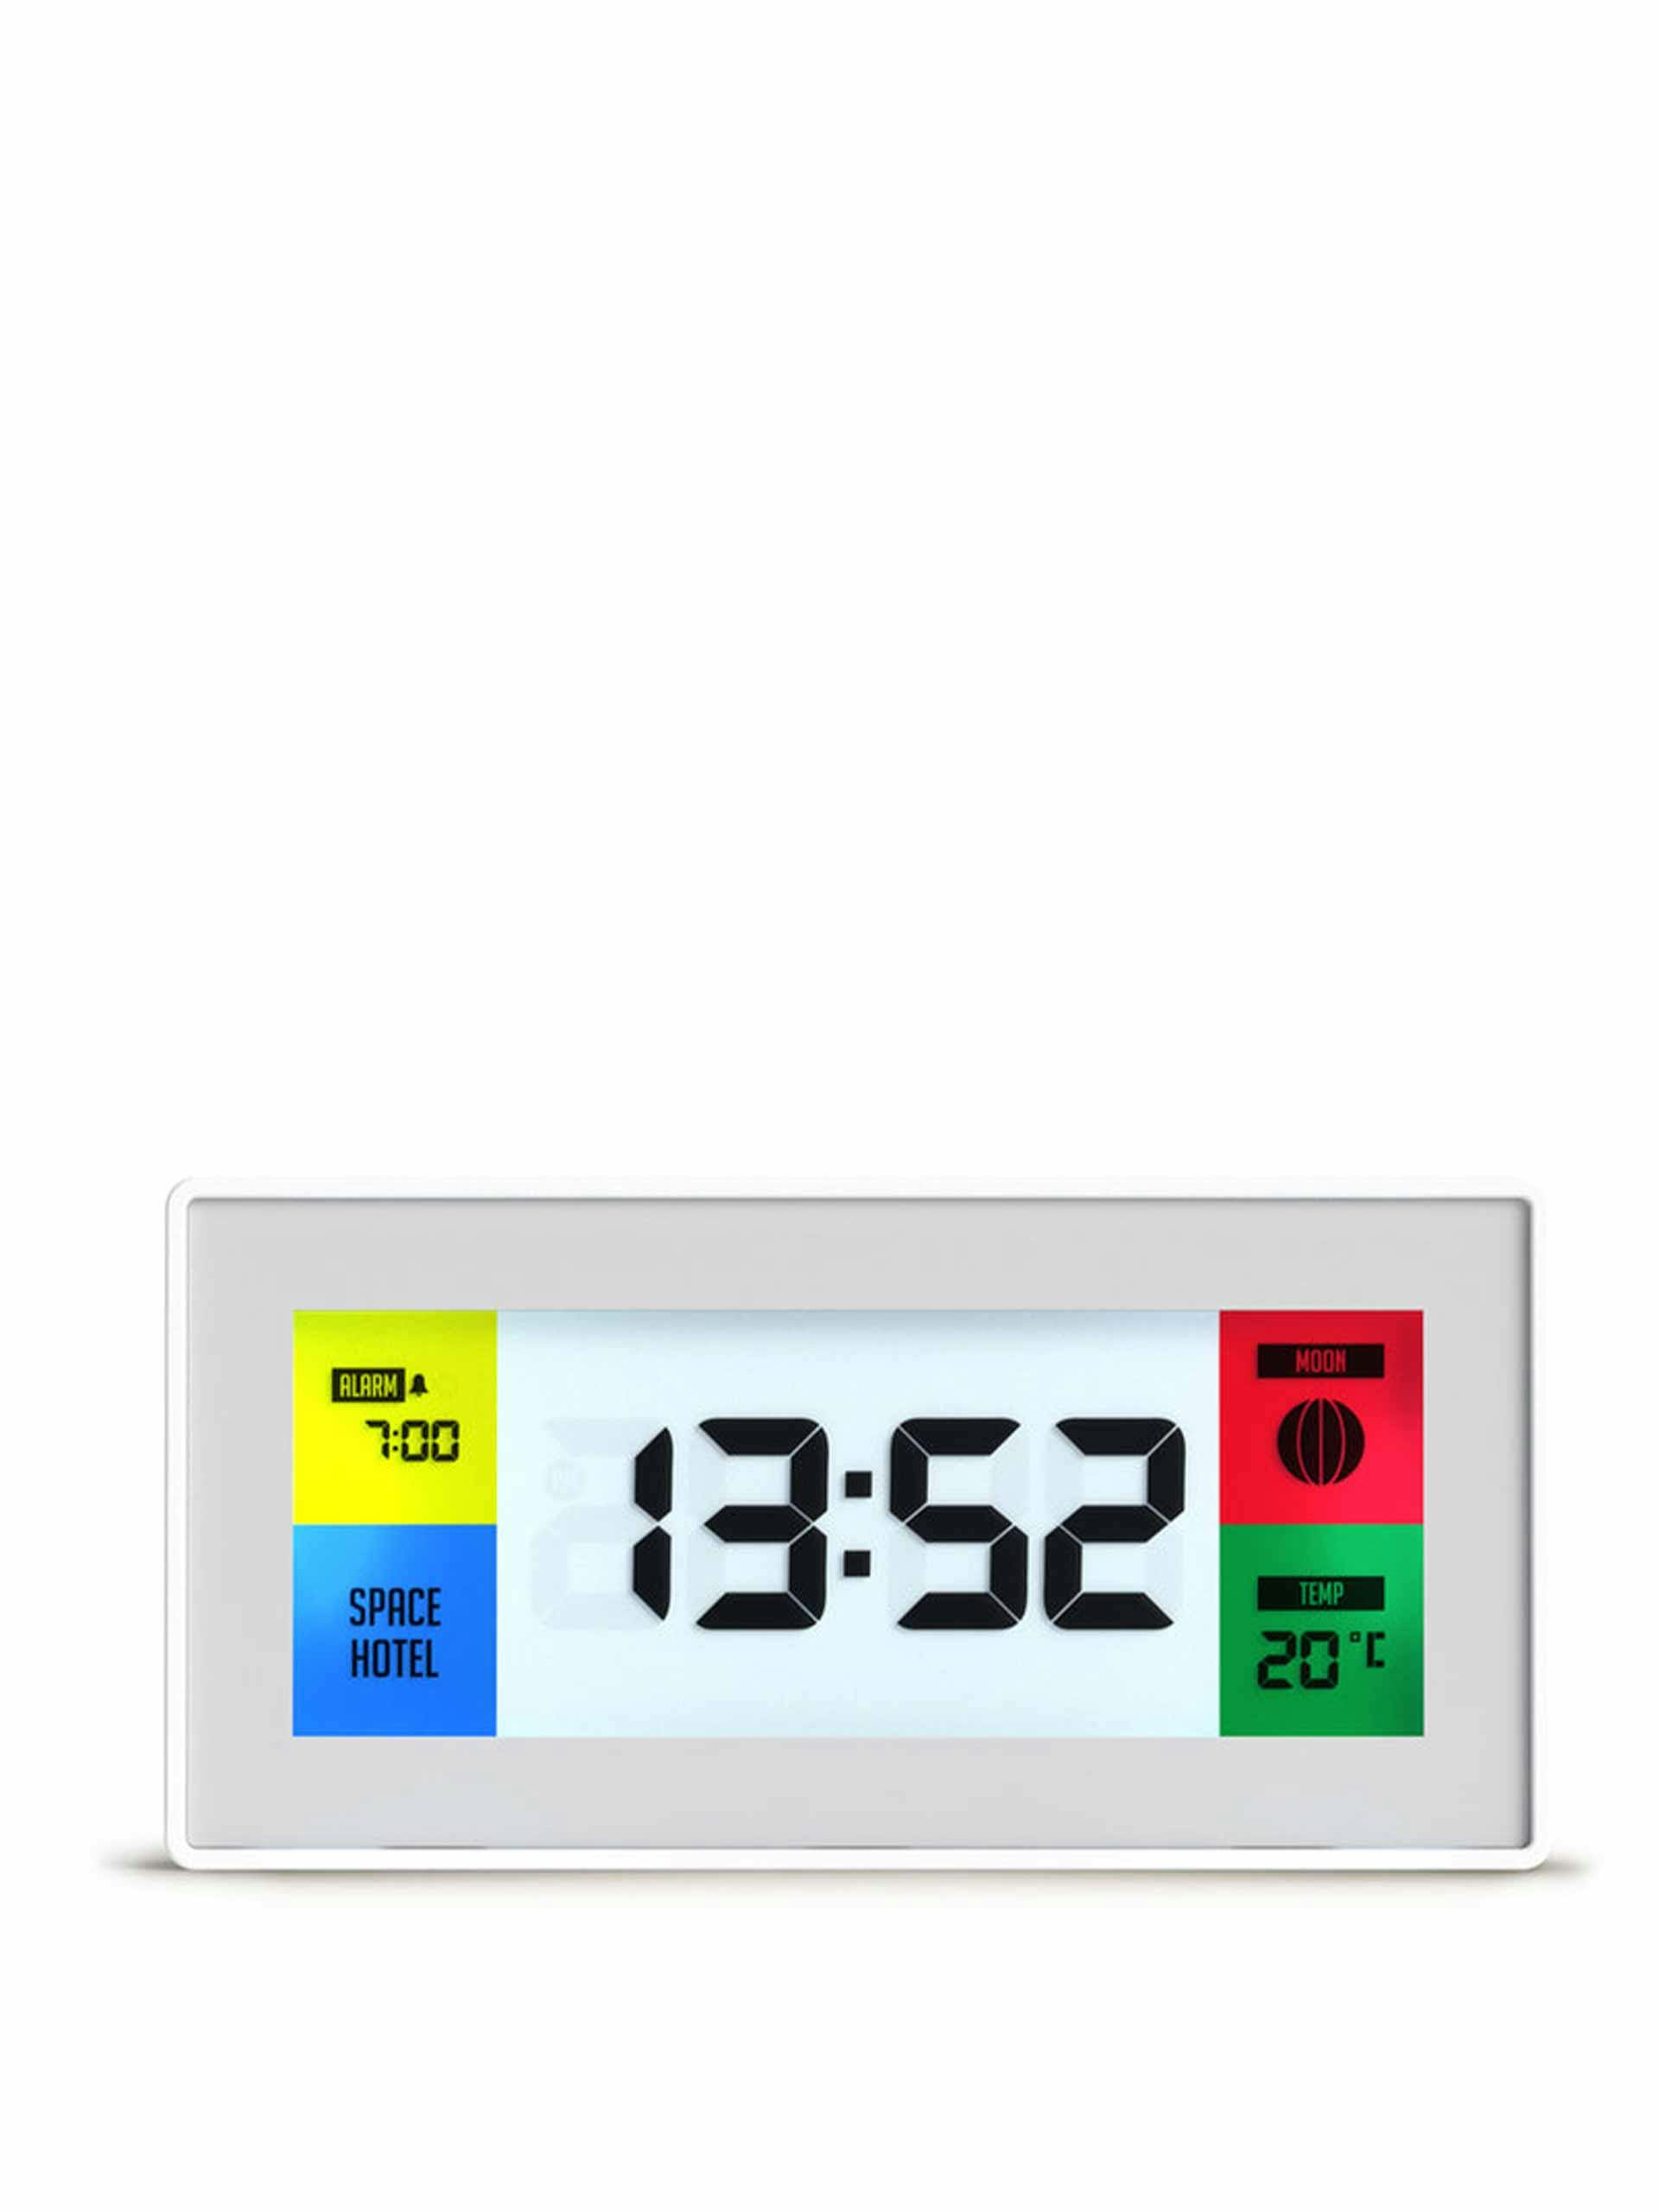 Retro digital alarm clock